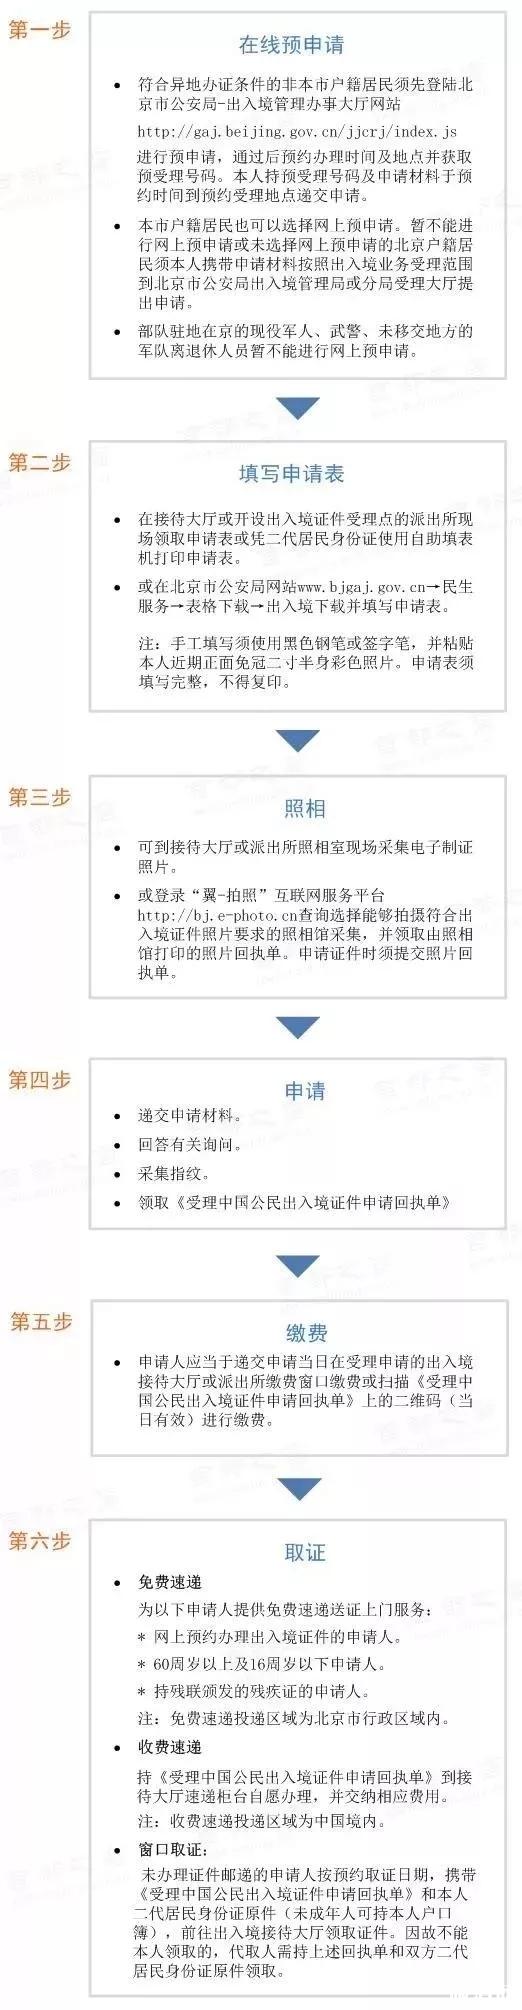 北京办护照加急多少天 2019北京护照办理地点+时间+材料+流程